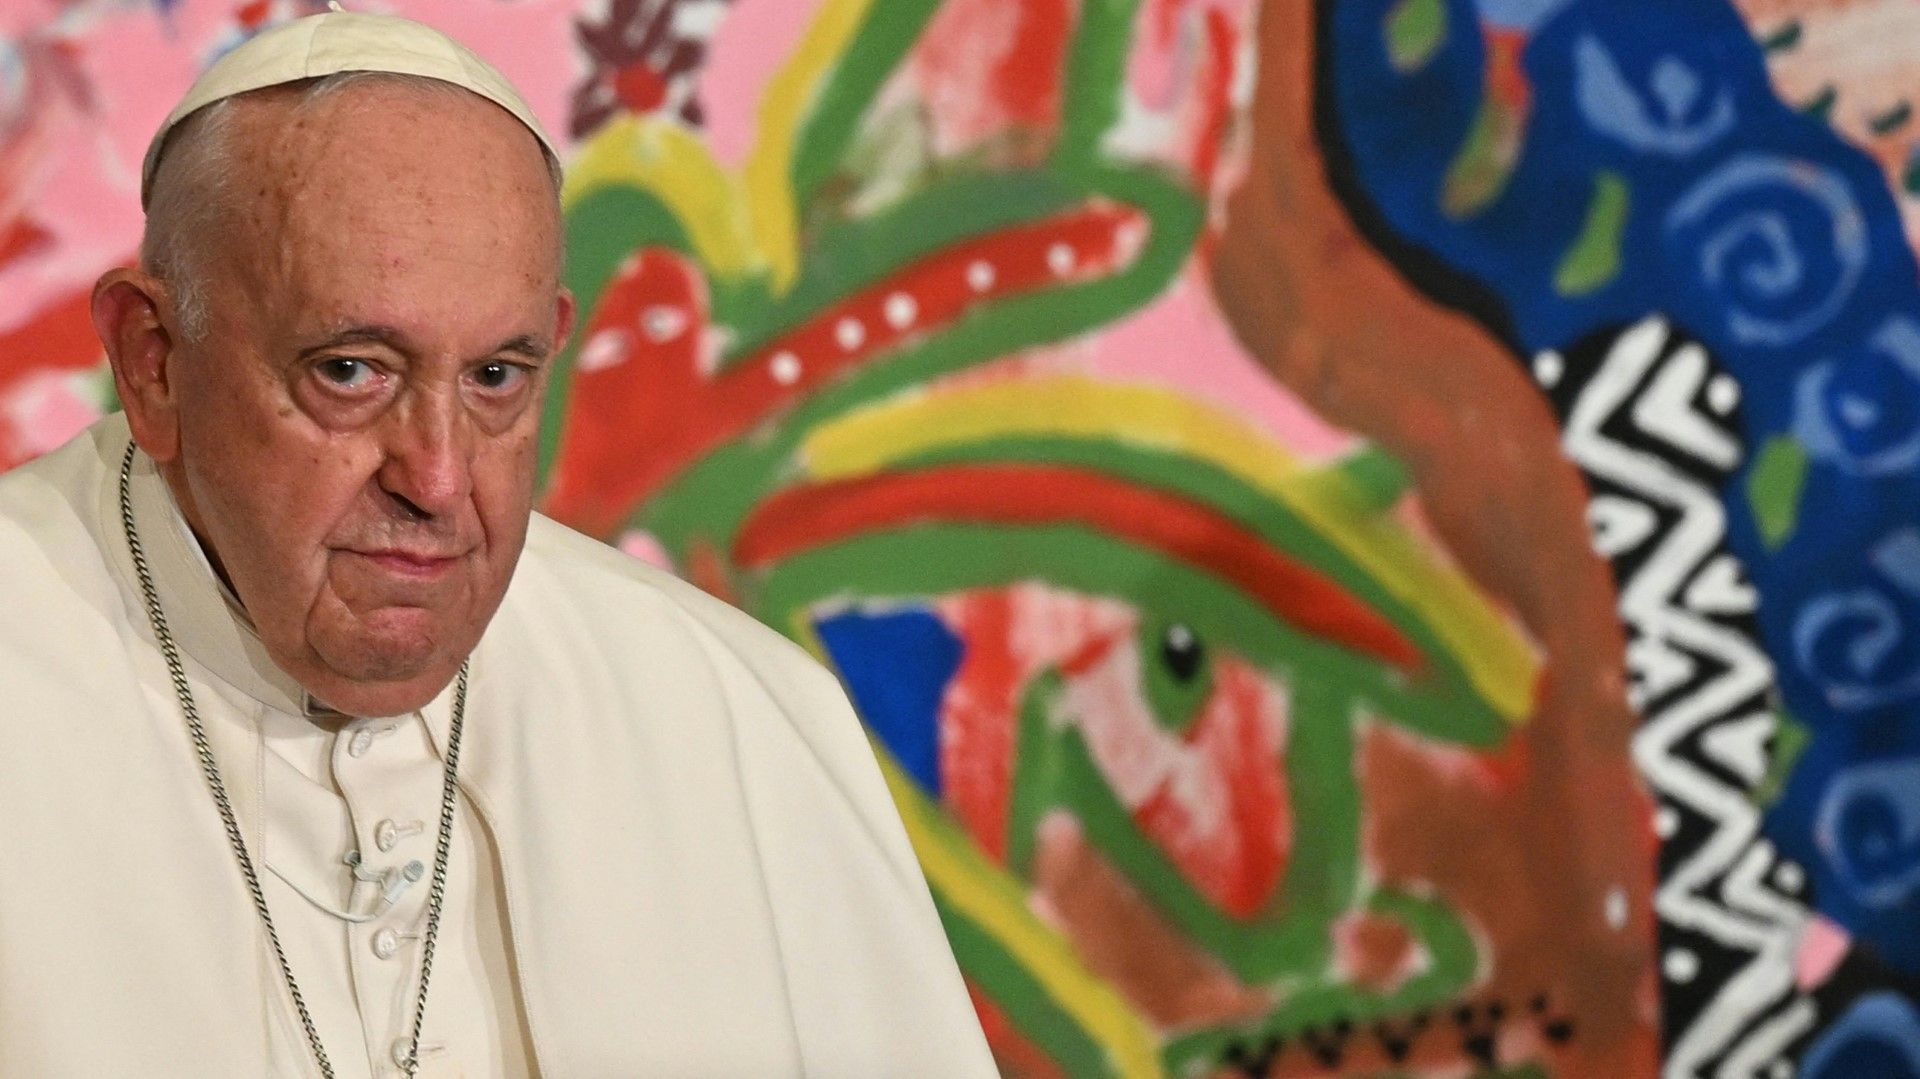 Papst Franziskus nach Darm-OP wach und zu Scherzen aufgelegt